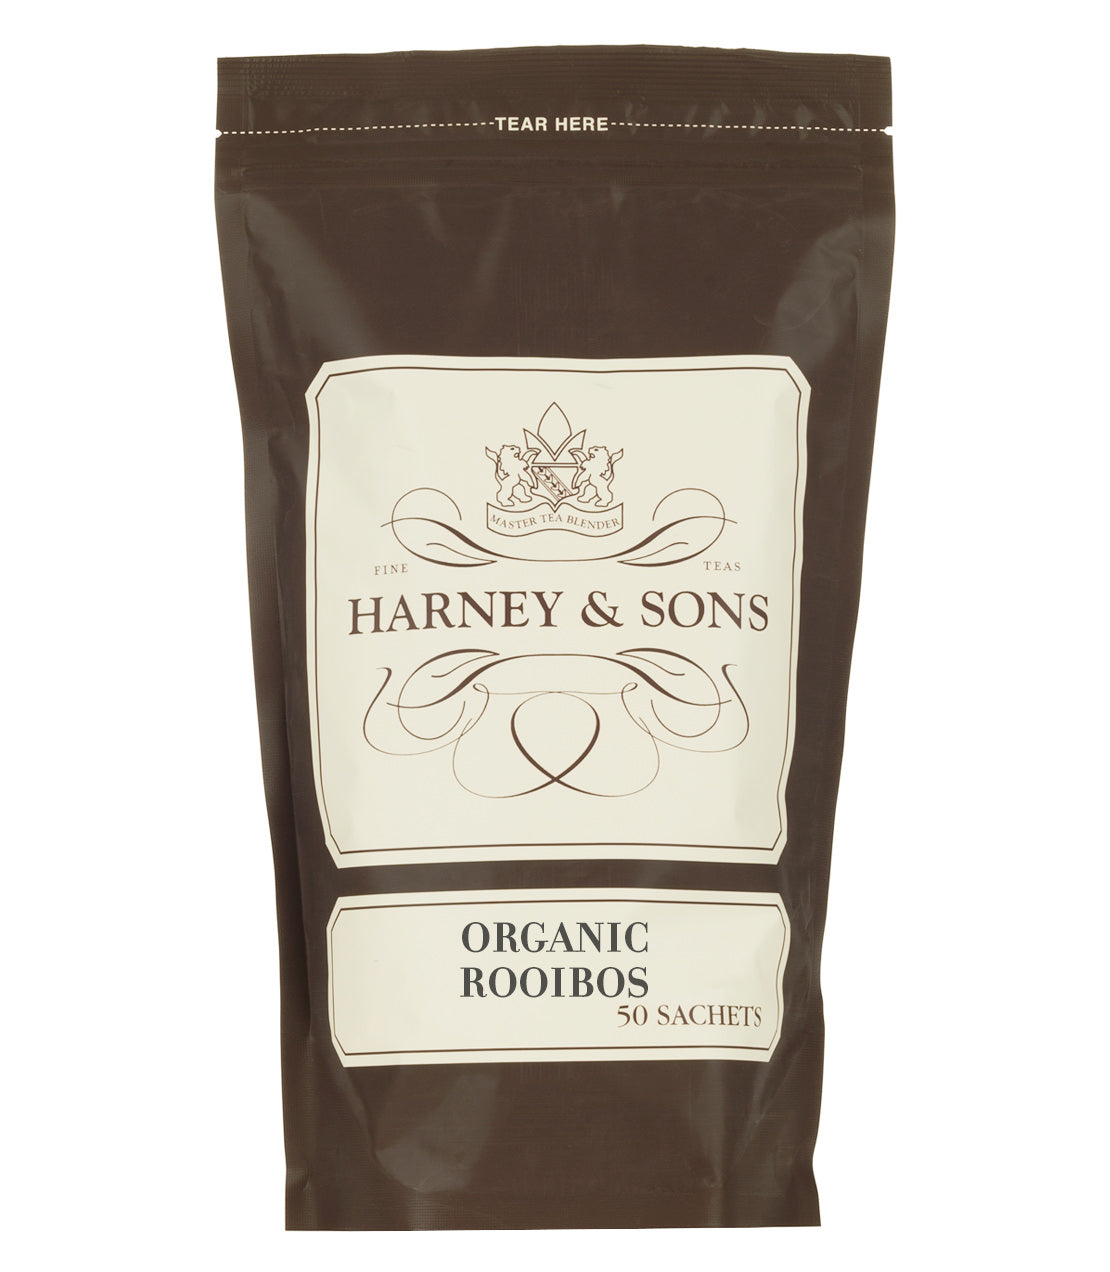 Organic Rooibos, Bag of 50 Sachets - Sachets Bag of 50 Sachets - Harney & Sons Fine Teas